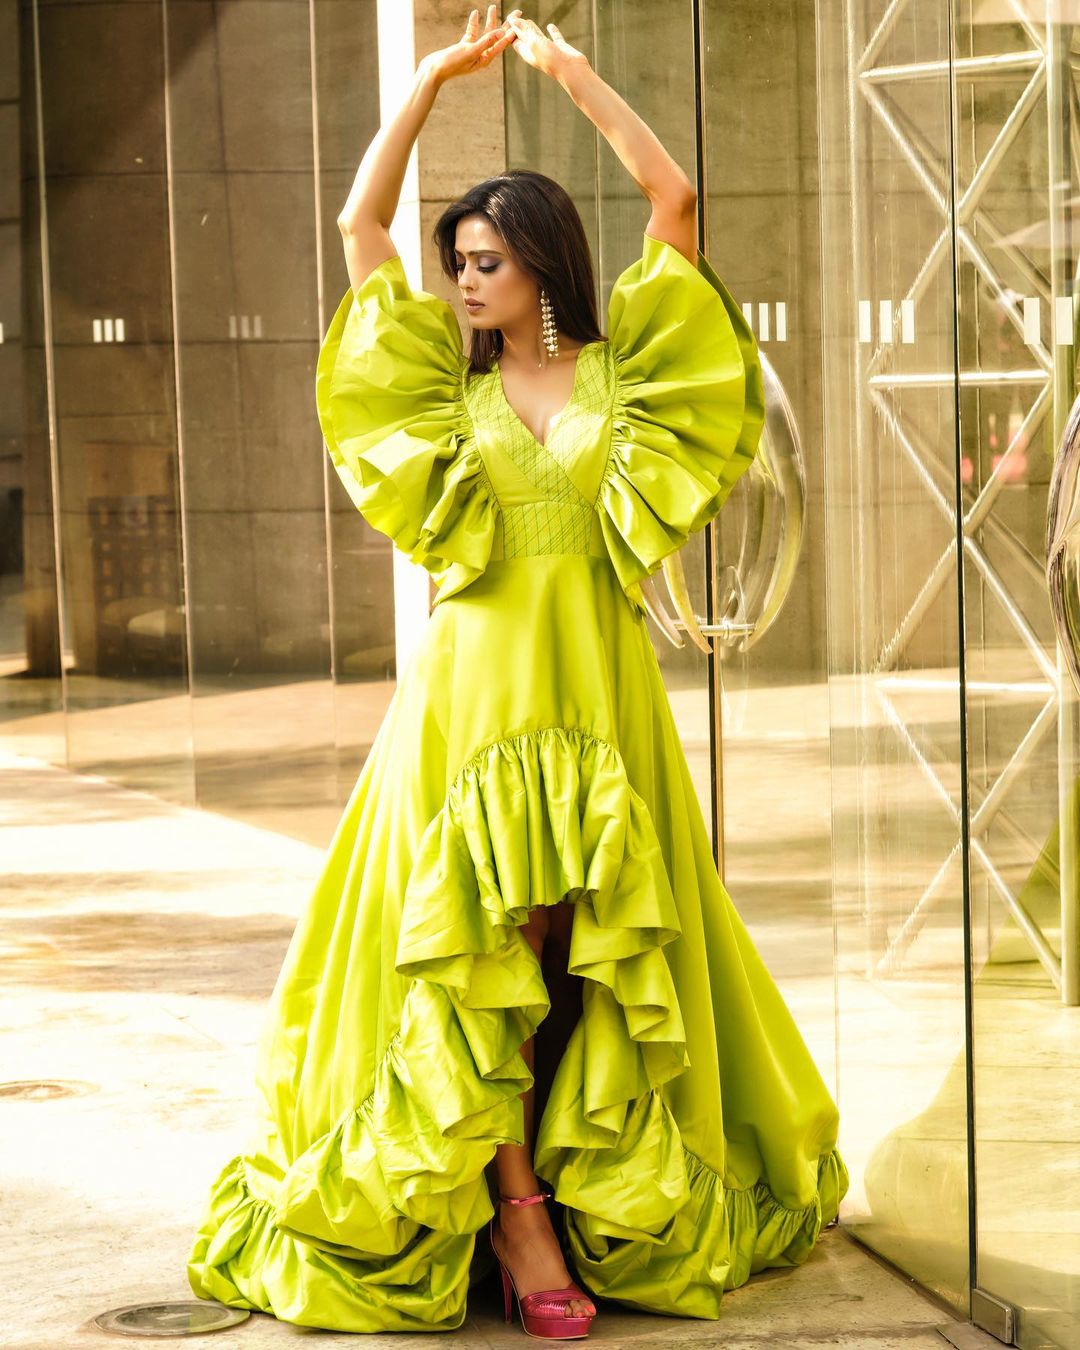 Shweta Tiwari green dress, Shweta Tiwari butterfly, Shweta Tiwari summer fashion, Shweta Tiwari style, Shweta Tiwari butterfly dress,